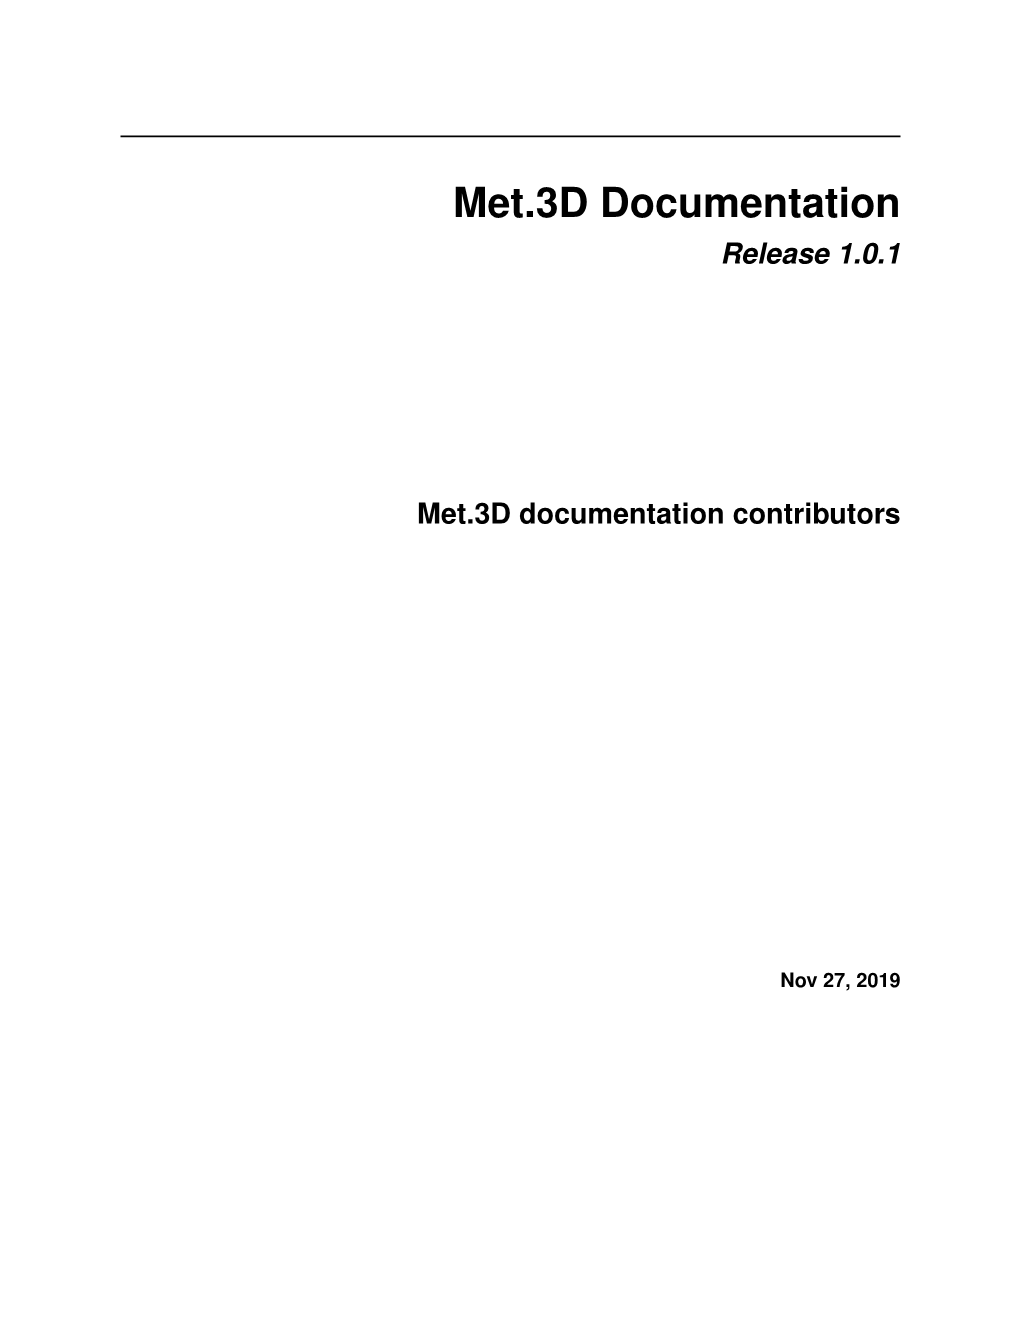 Release 1.0.1 Met.3D Documentation Contributors